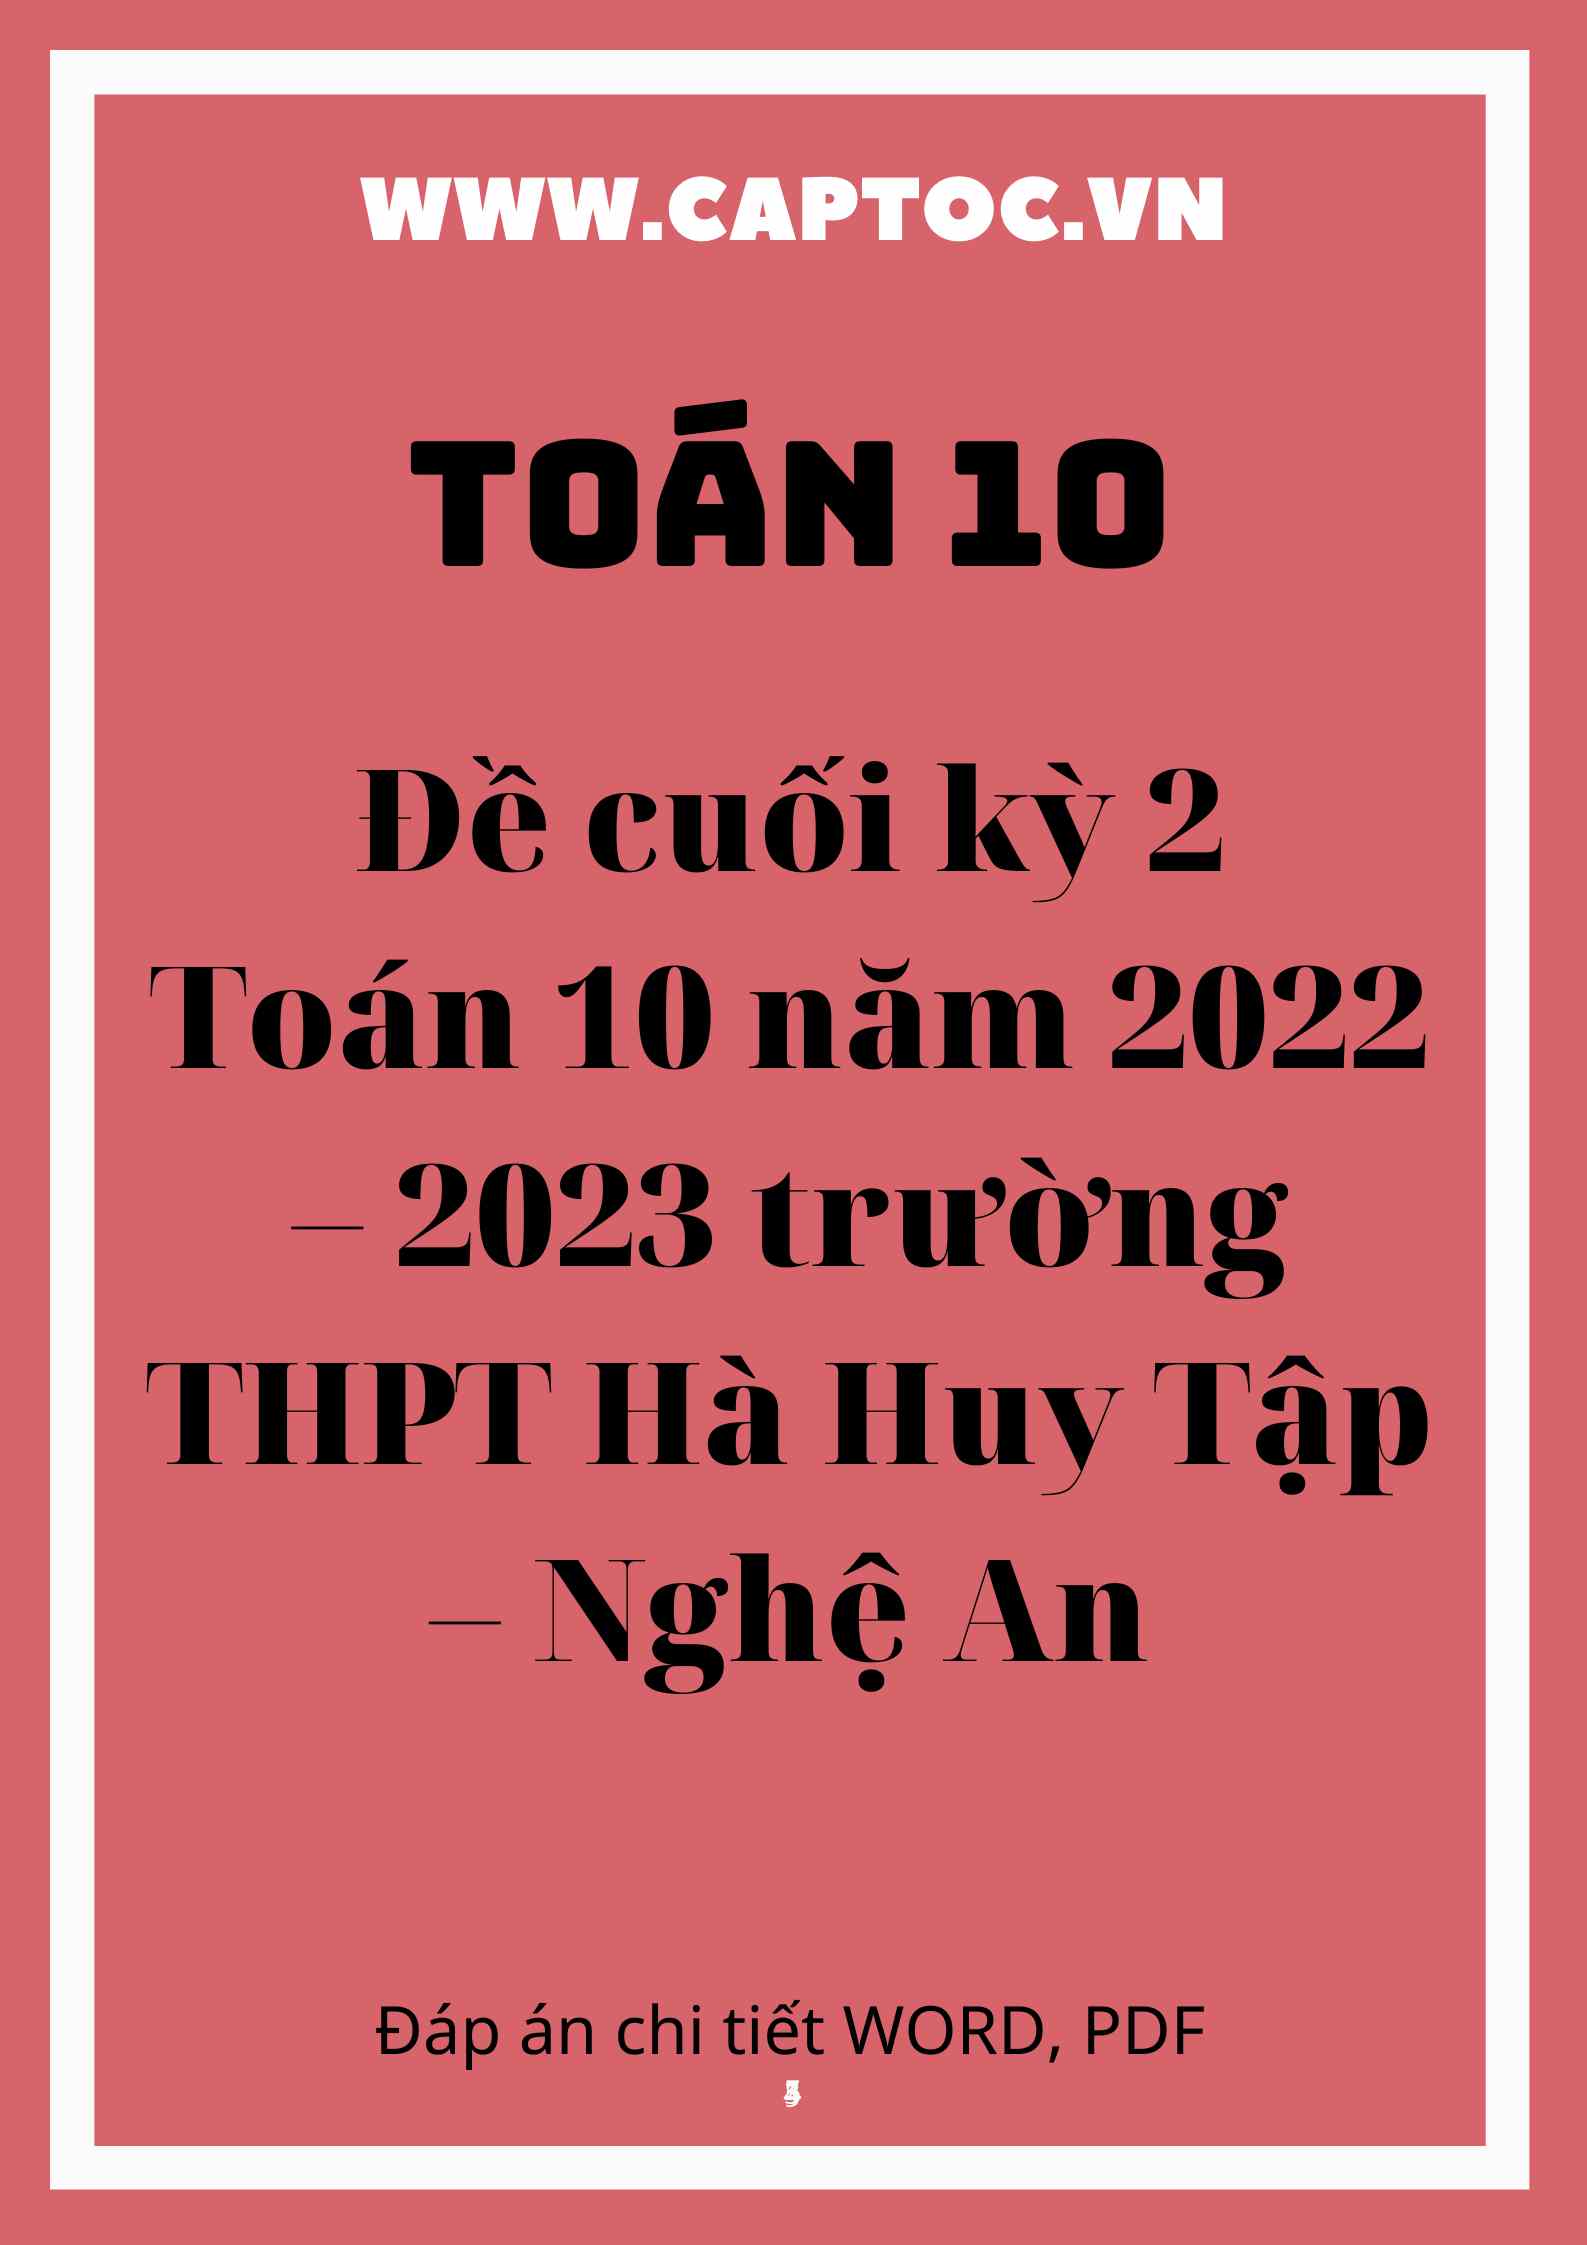 Đề cuối kỳ 2 Toán 10 năm 2022 – 2023 trường THPT Hà Huy Tập – Nghệ An